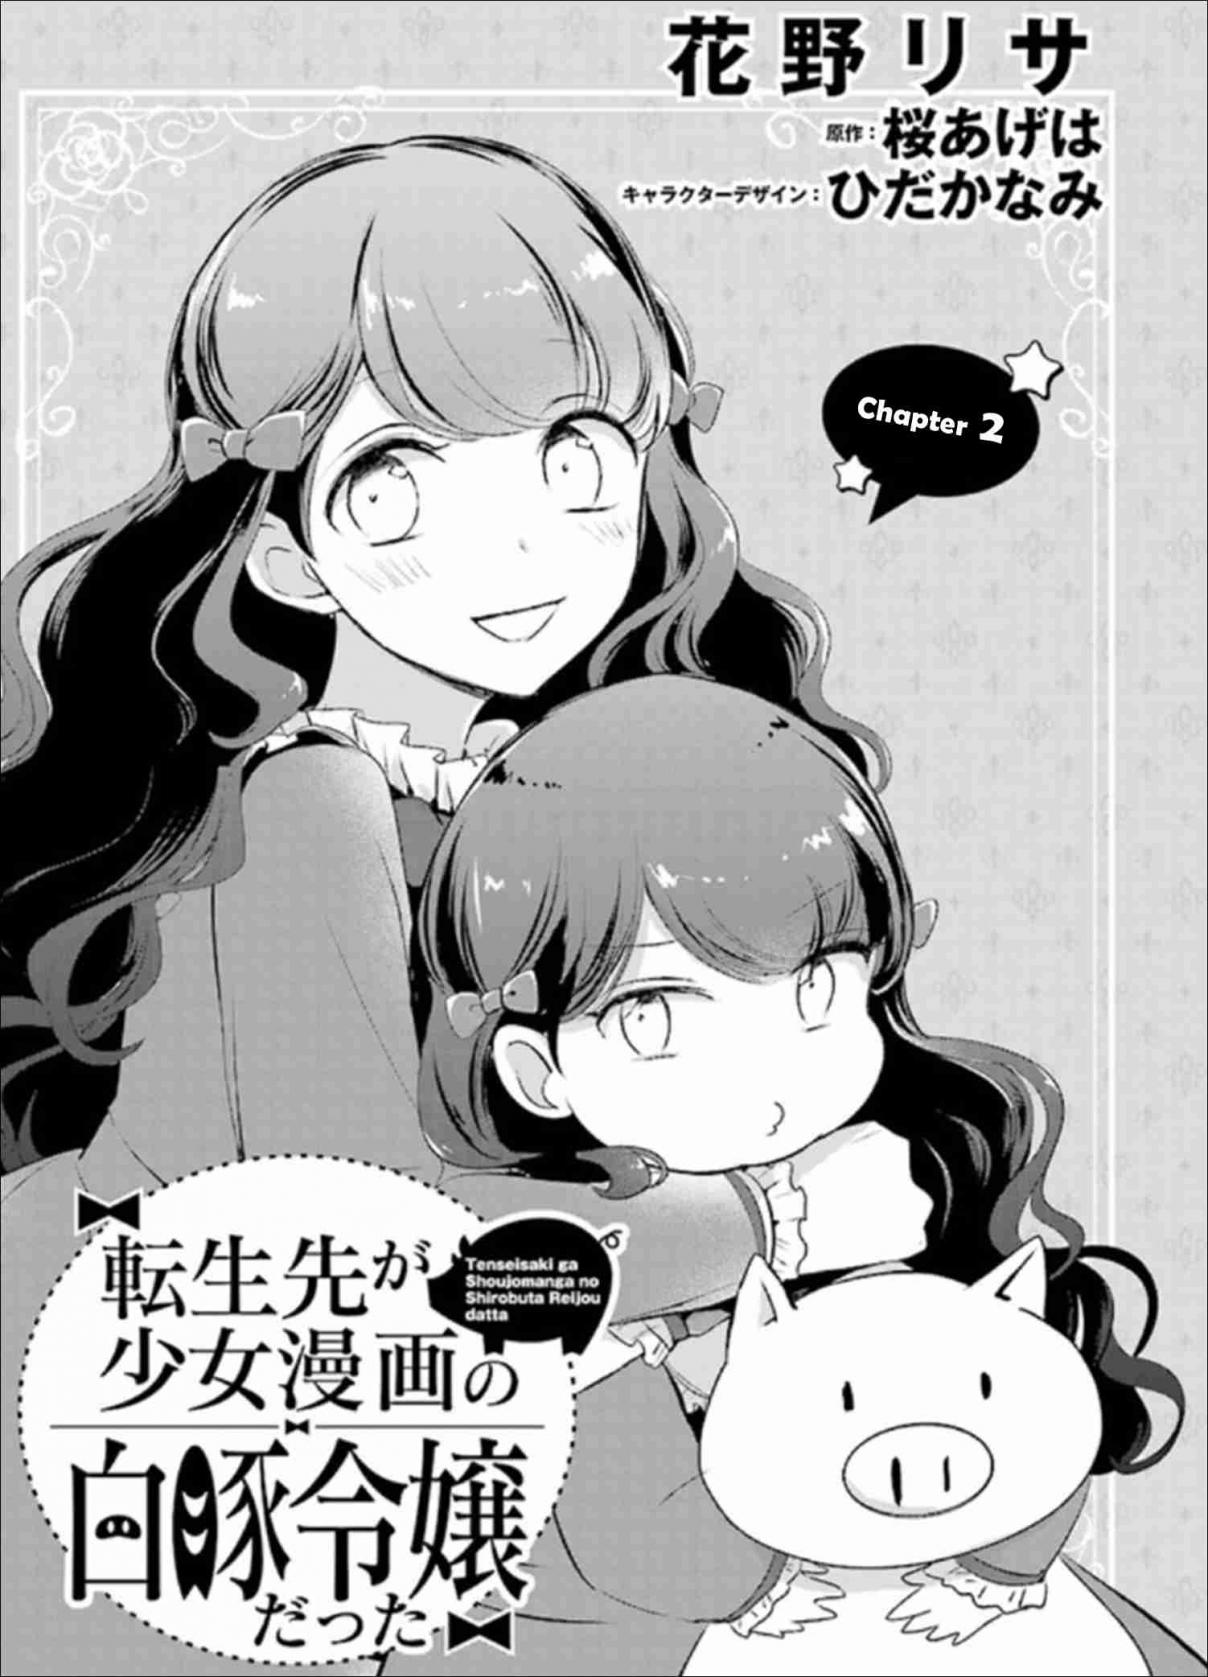 Tensei Saki ga Shoujo Manga no Shiro Buta Reijou datta Vol. 1 Ch. 2 Volume 1 Chapter 2